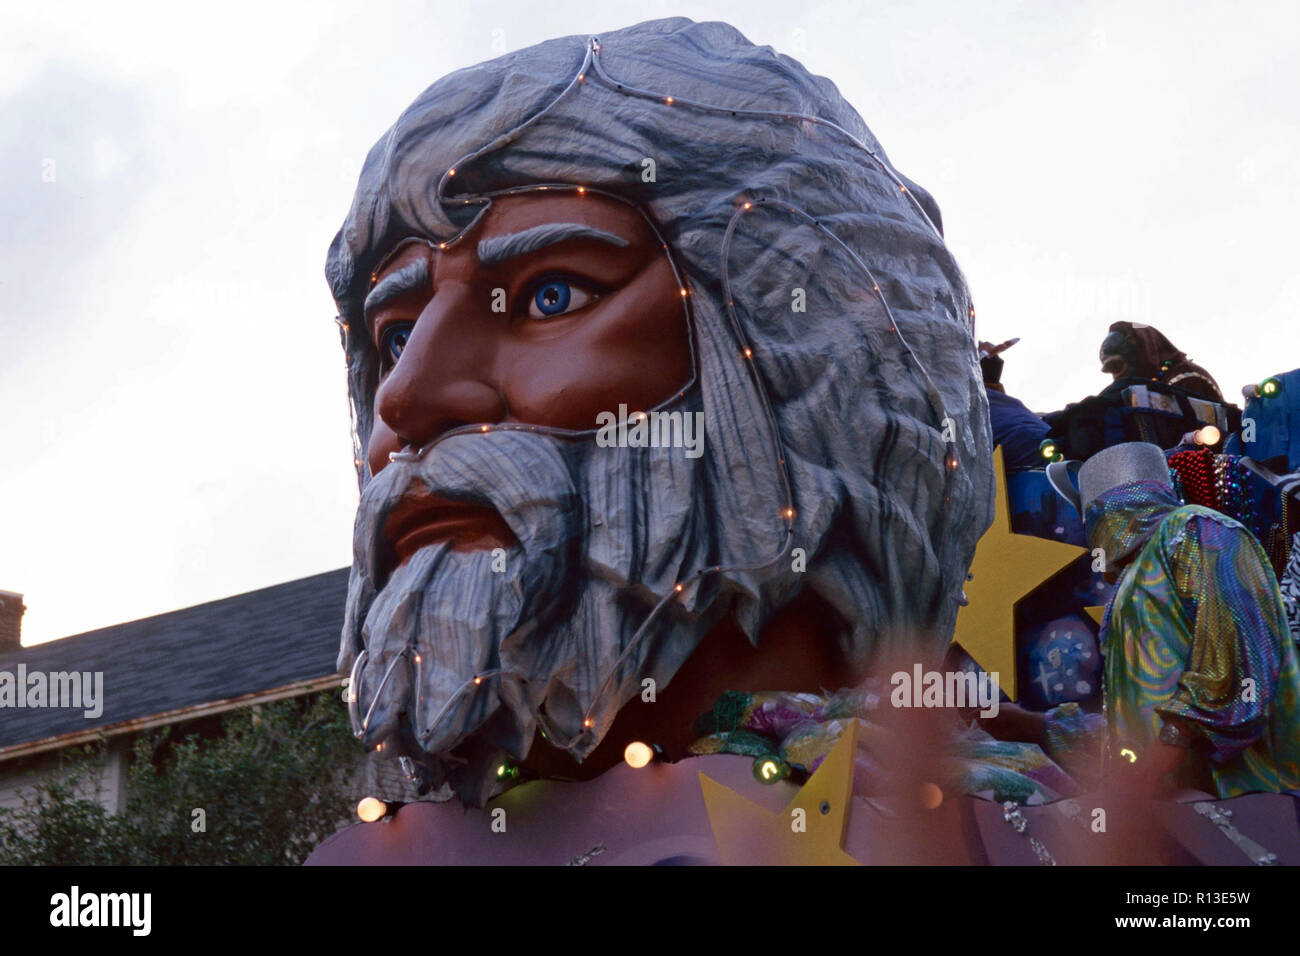 Mardi Gra floats,New Orleans,Louisiana Stock Photo